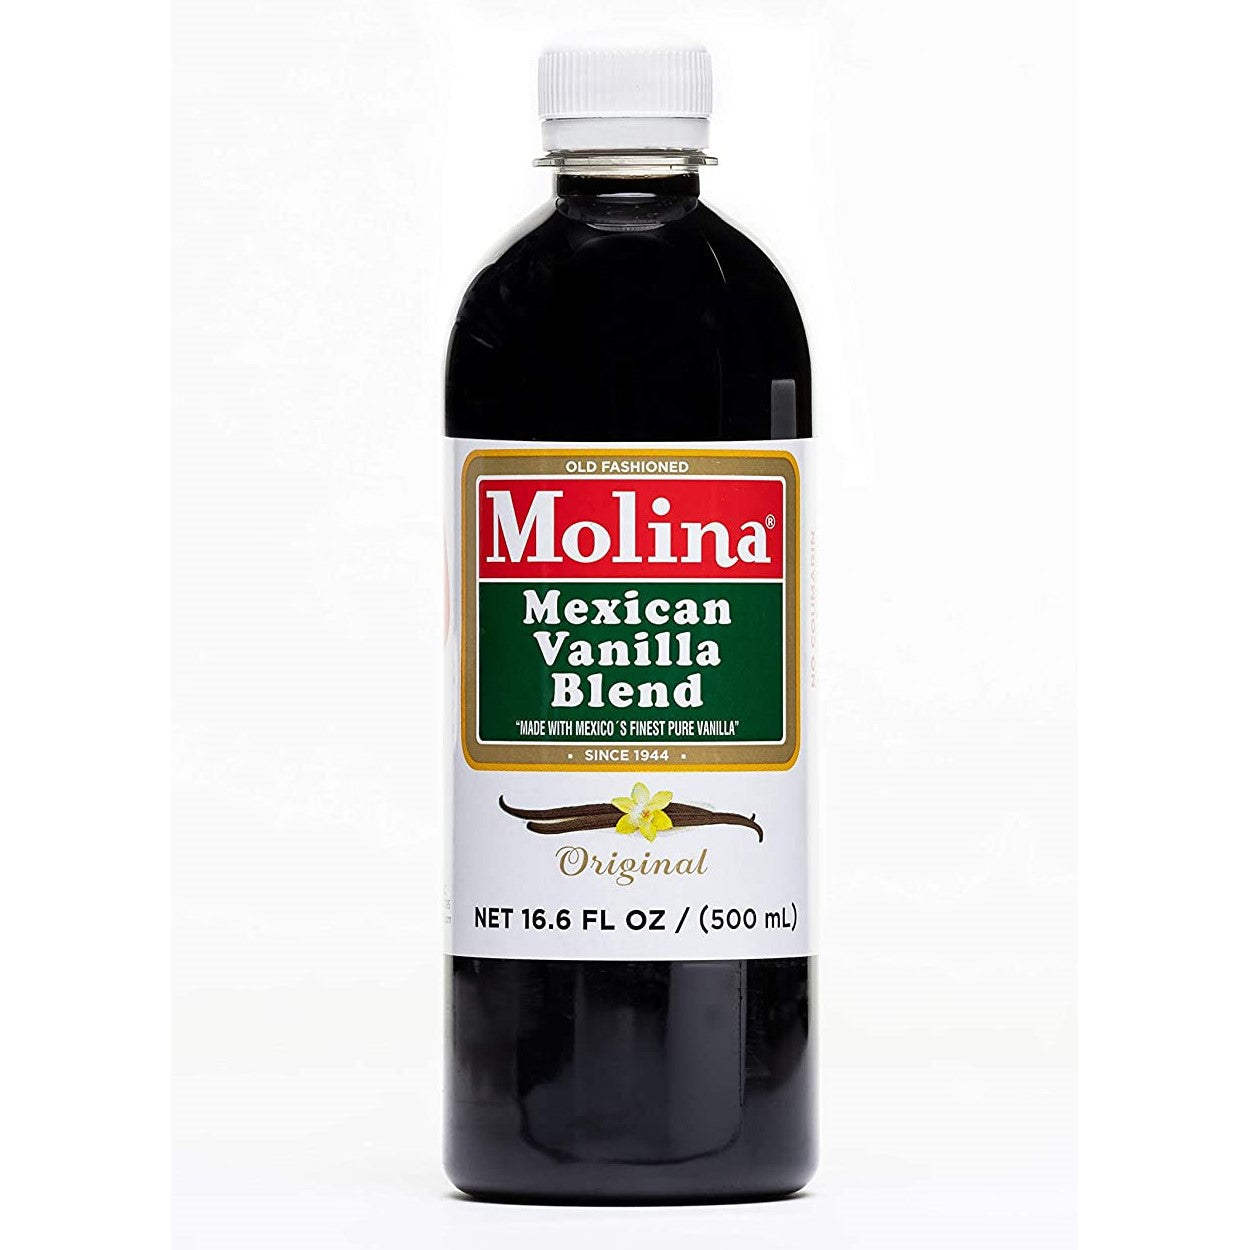 Molina Mexican Vanilla Blend - Original 16.6oz